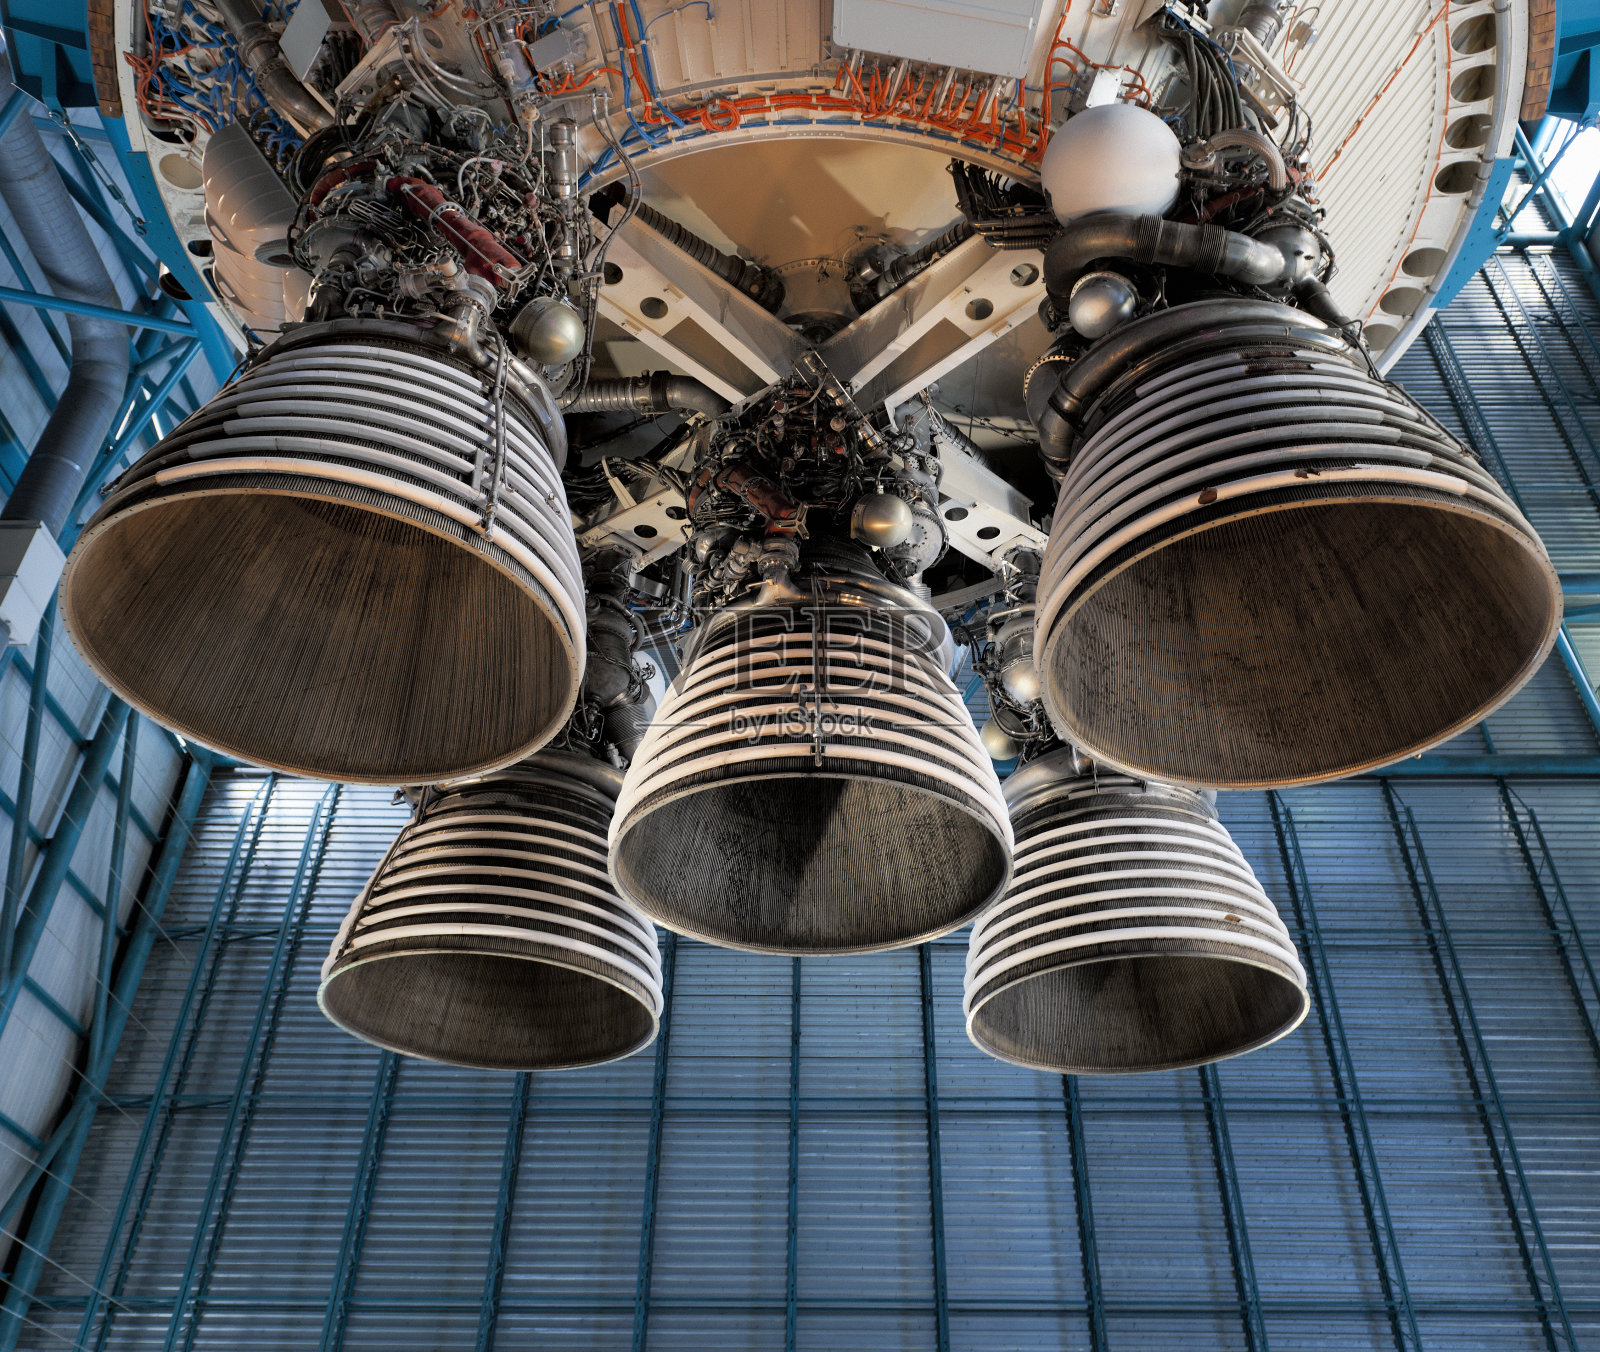 土星5号火箭发动机和排气管照片摄影图片